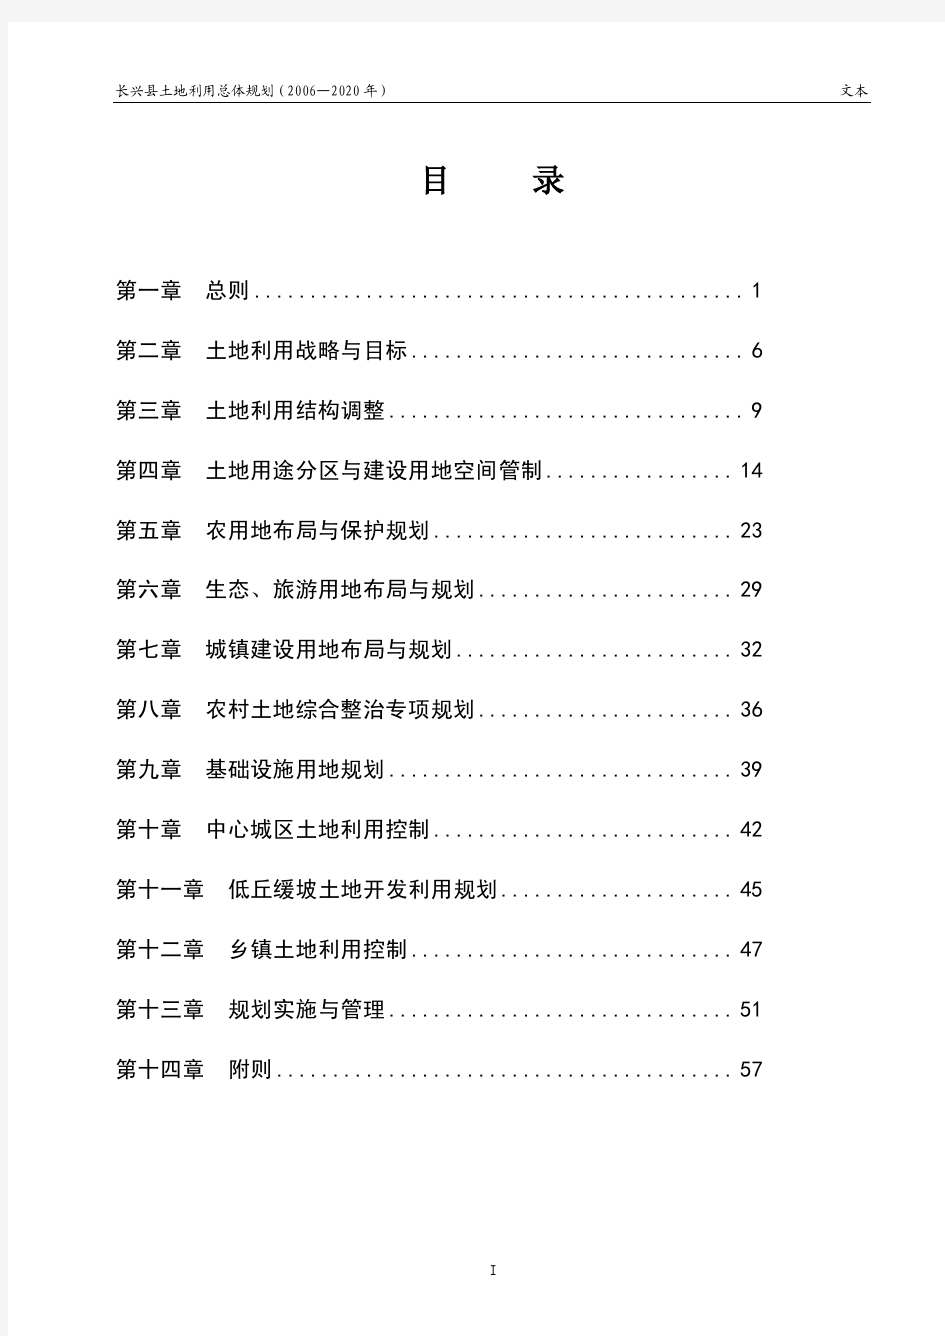 长兴县土地利用总体规划(2006-2020年)文本